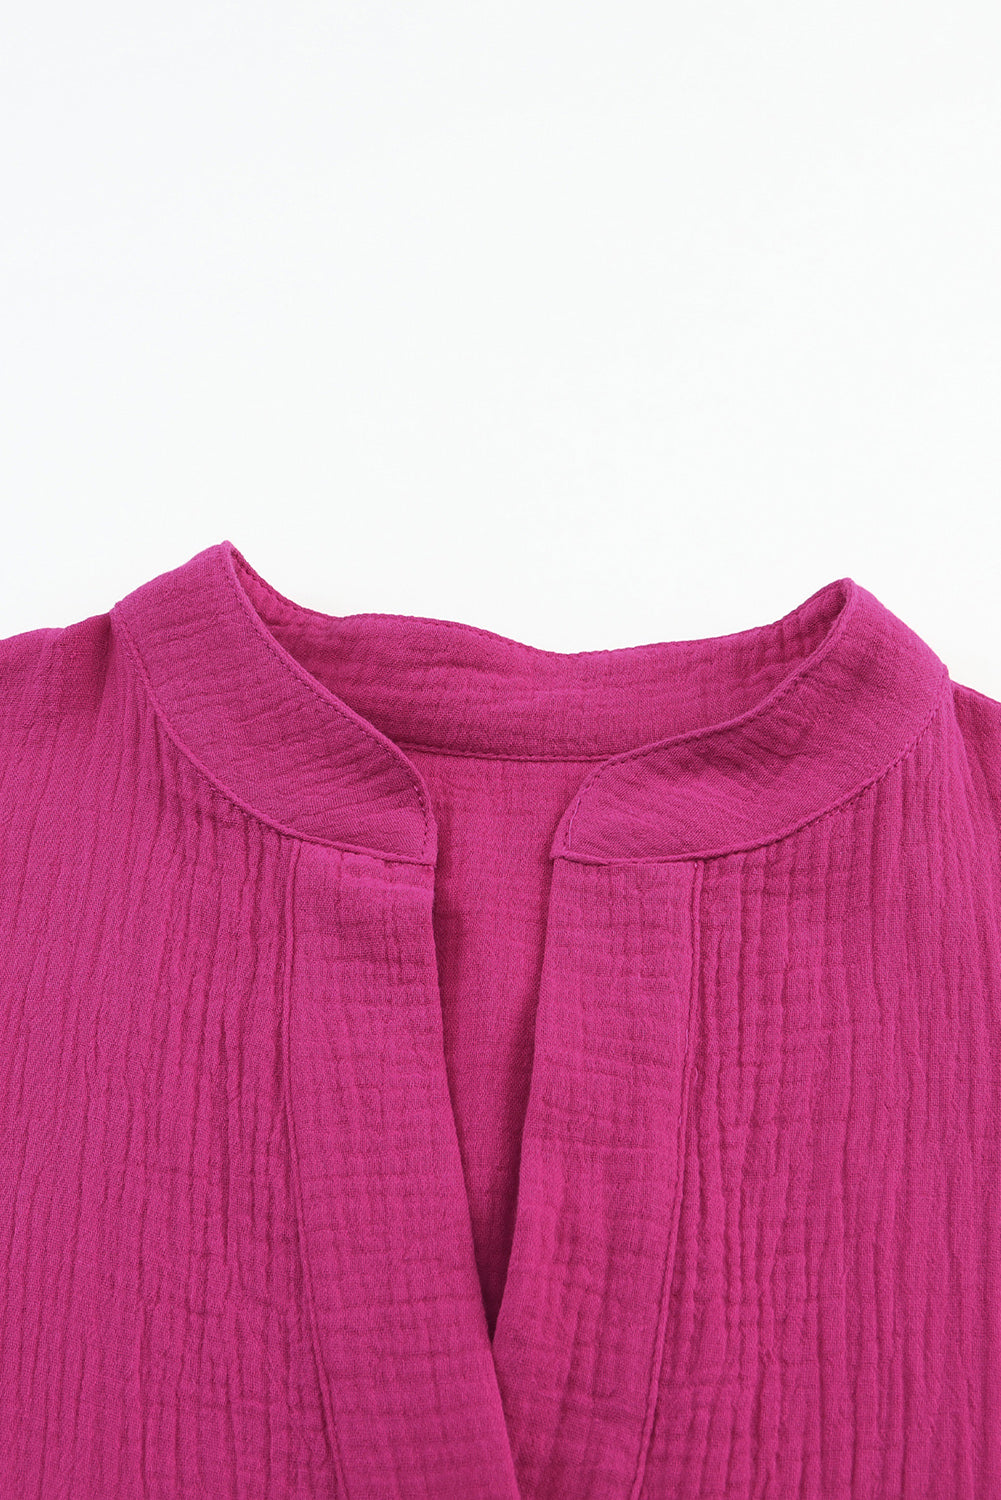 Gestuftes Hemdblusenkleid mit geteiltem Ausschnitt in Rosa in Knitteroptik